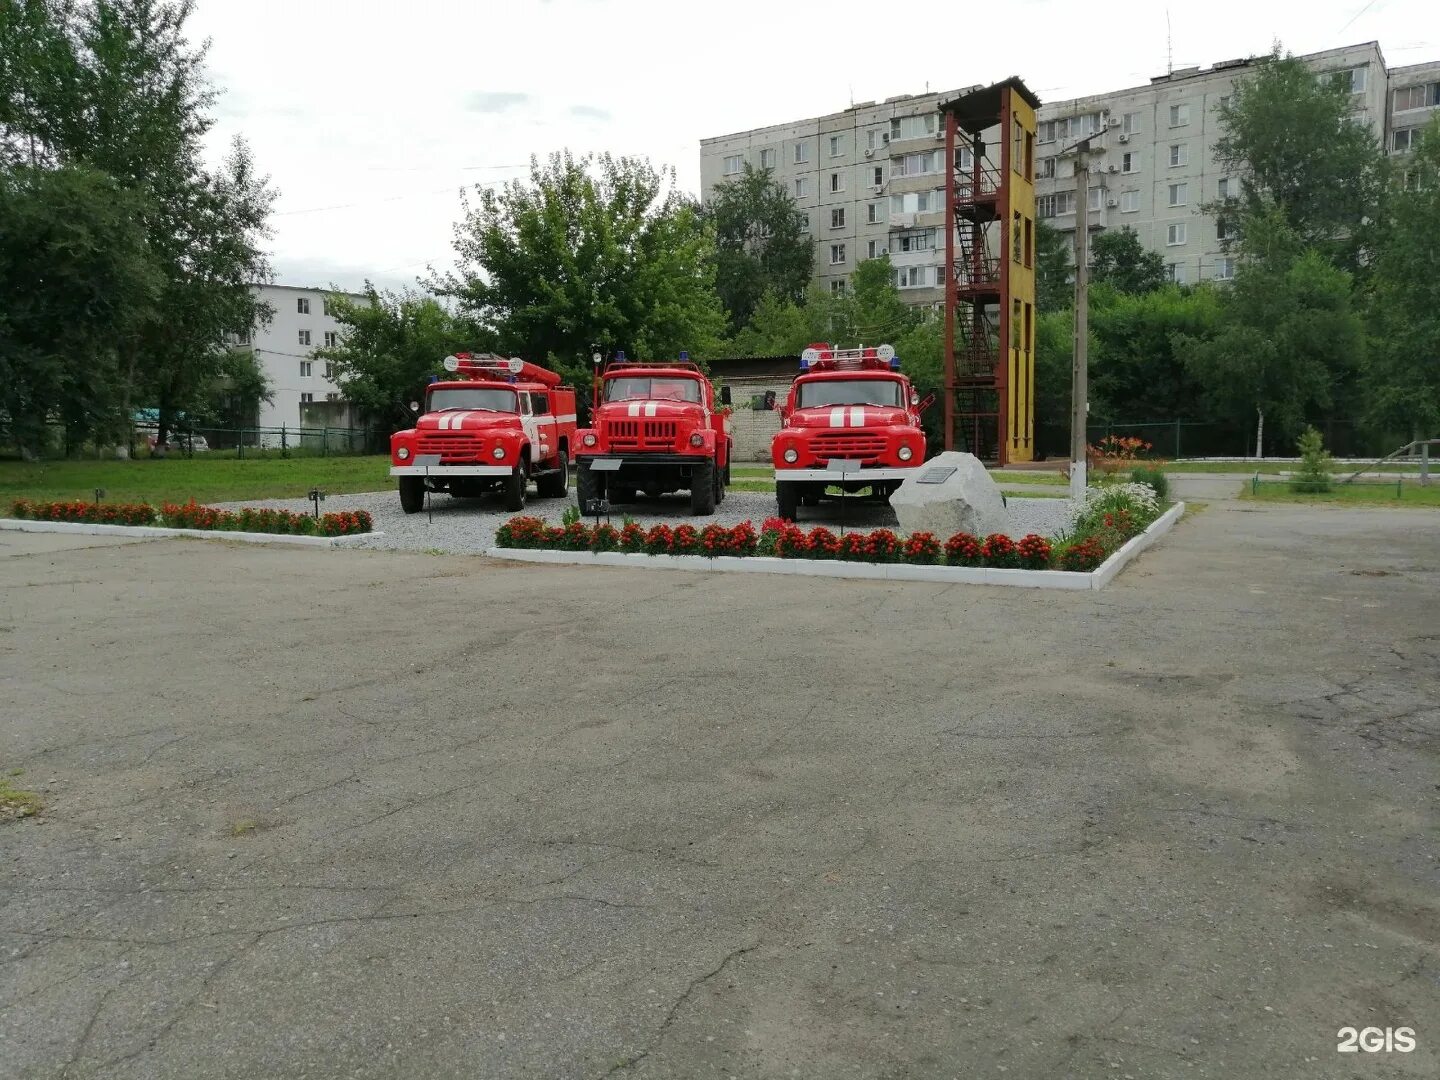 2 Пожарная часть Хабаровск. Пожарная часть 30 Хабаровск. Хабаровск пожарный часть. Пожарный часть 35 Хабаровск. Сп 3 пожарная